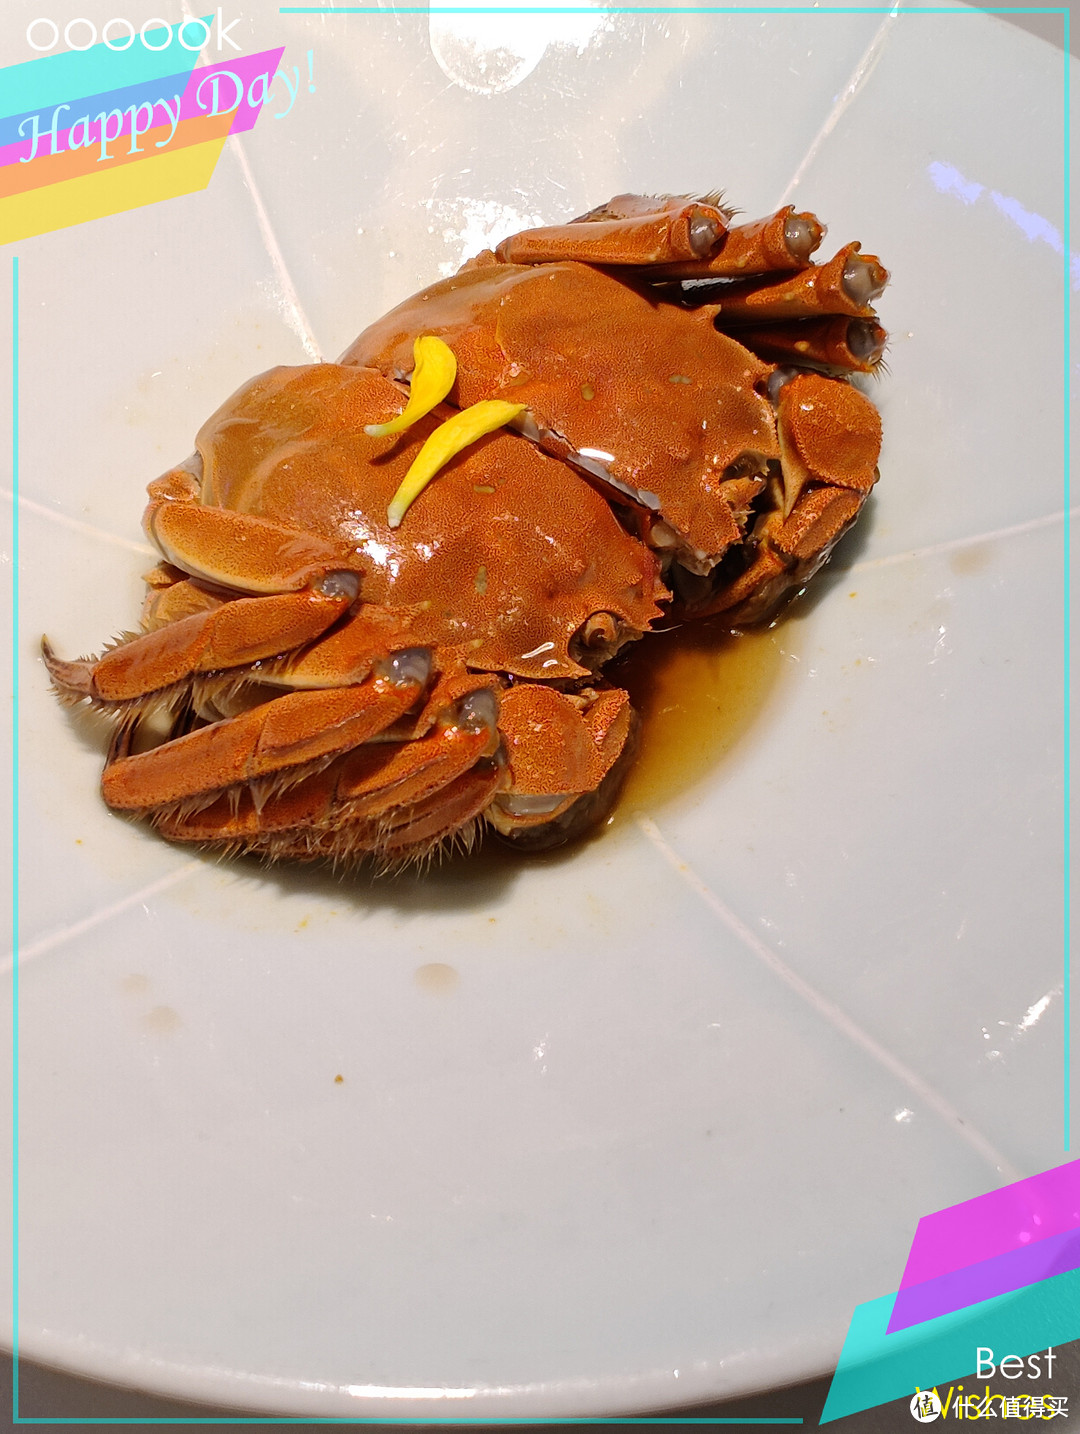 秋季美食之三种大闸蟹的吃法分享